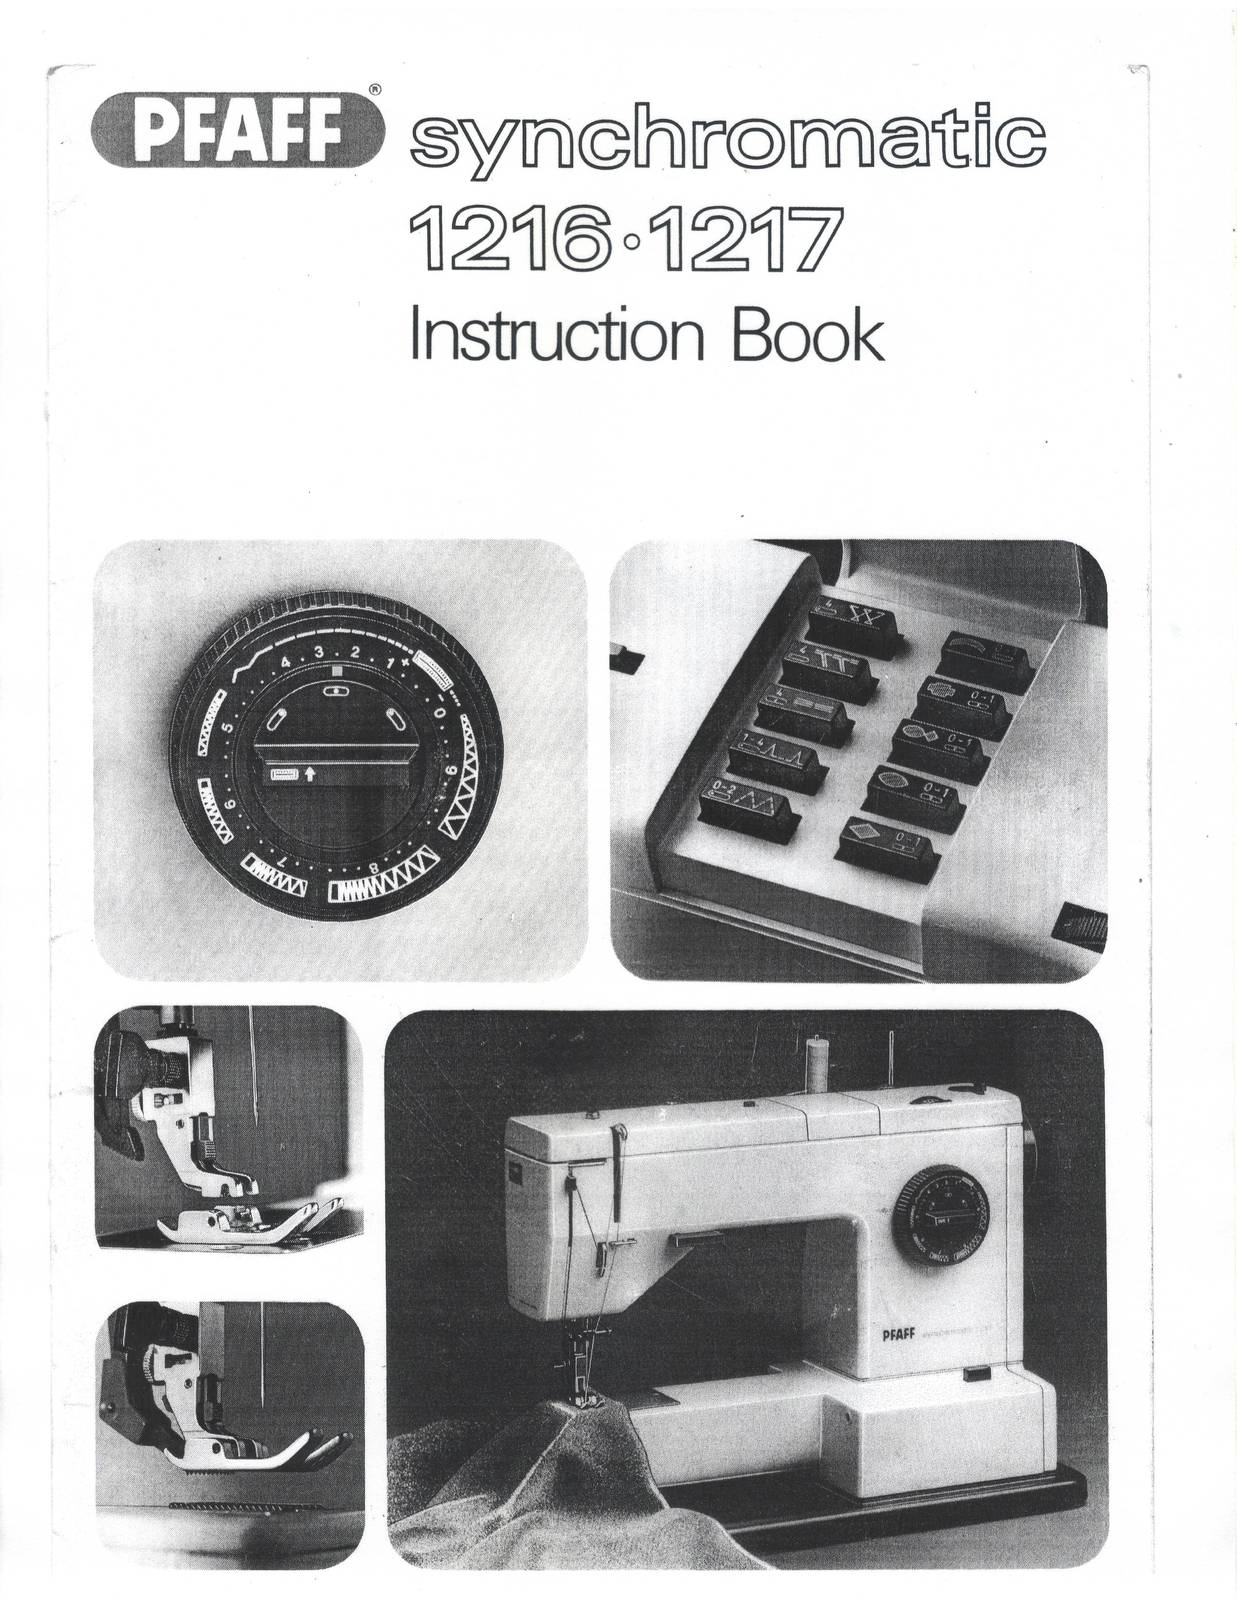 Pfaff 1216 1217 manual Synchromatic sewing machine Enlarged - $10.99